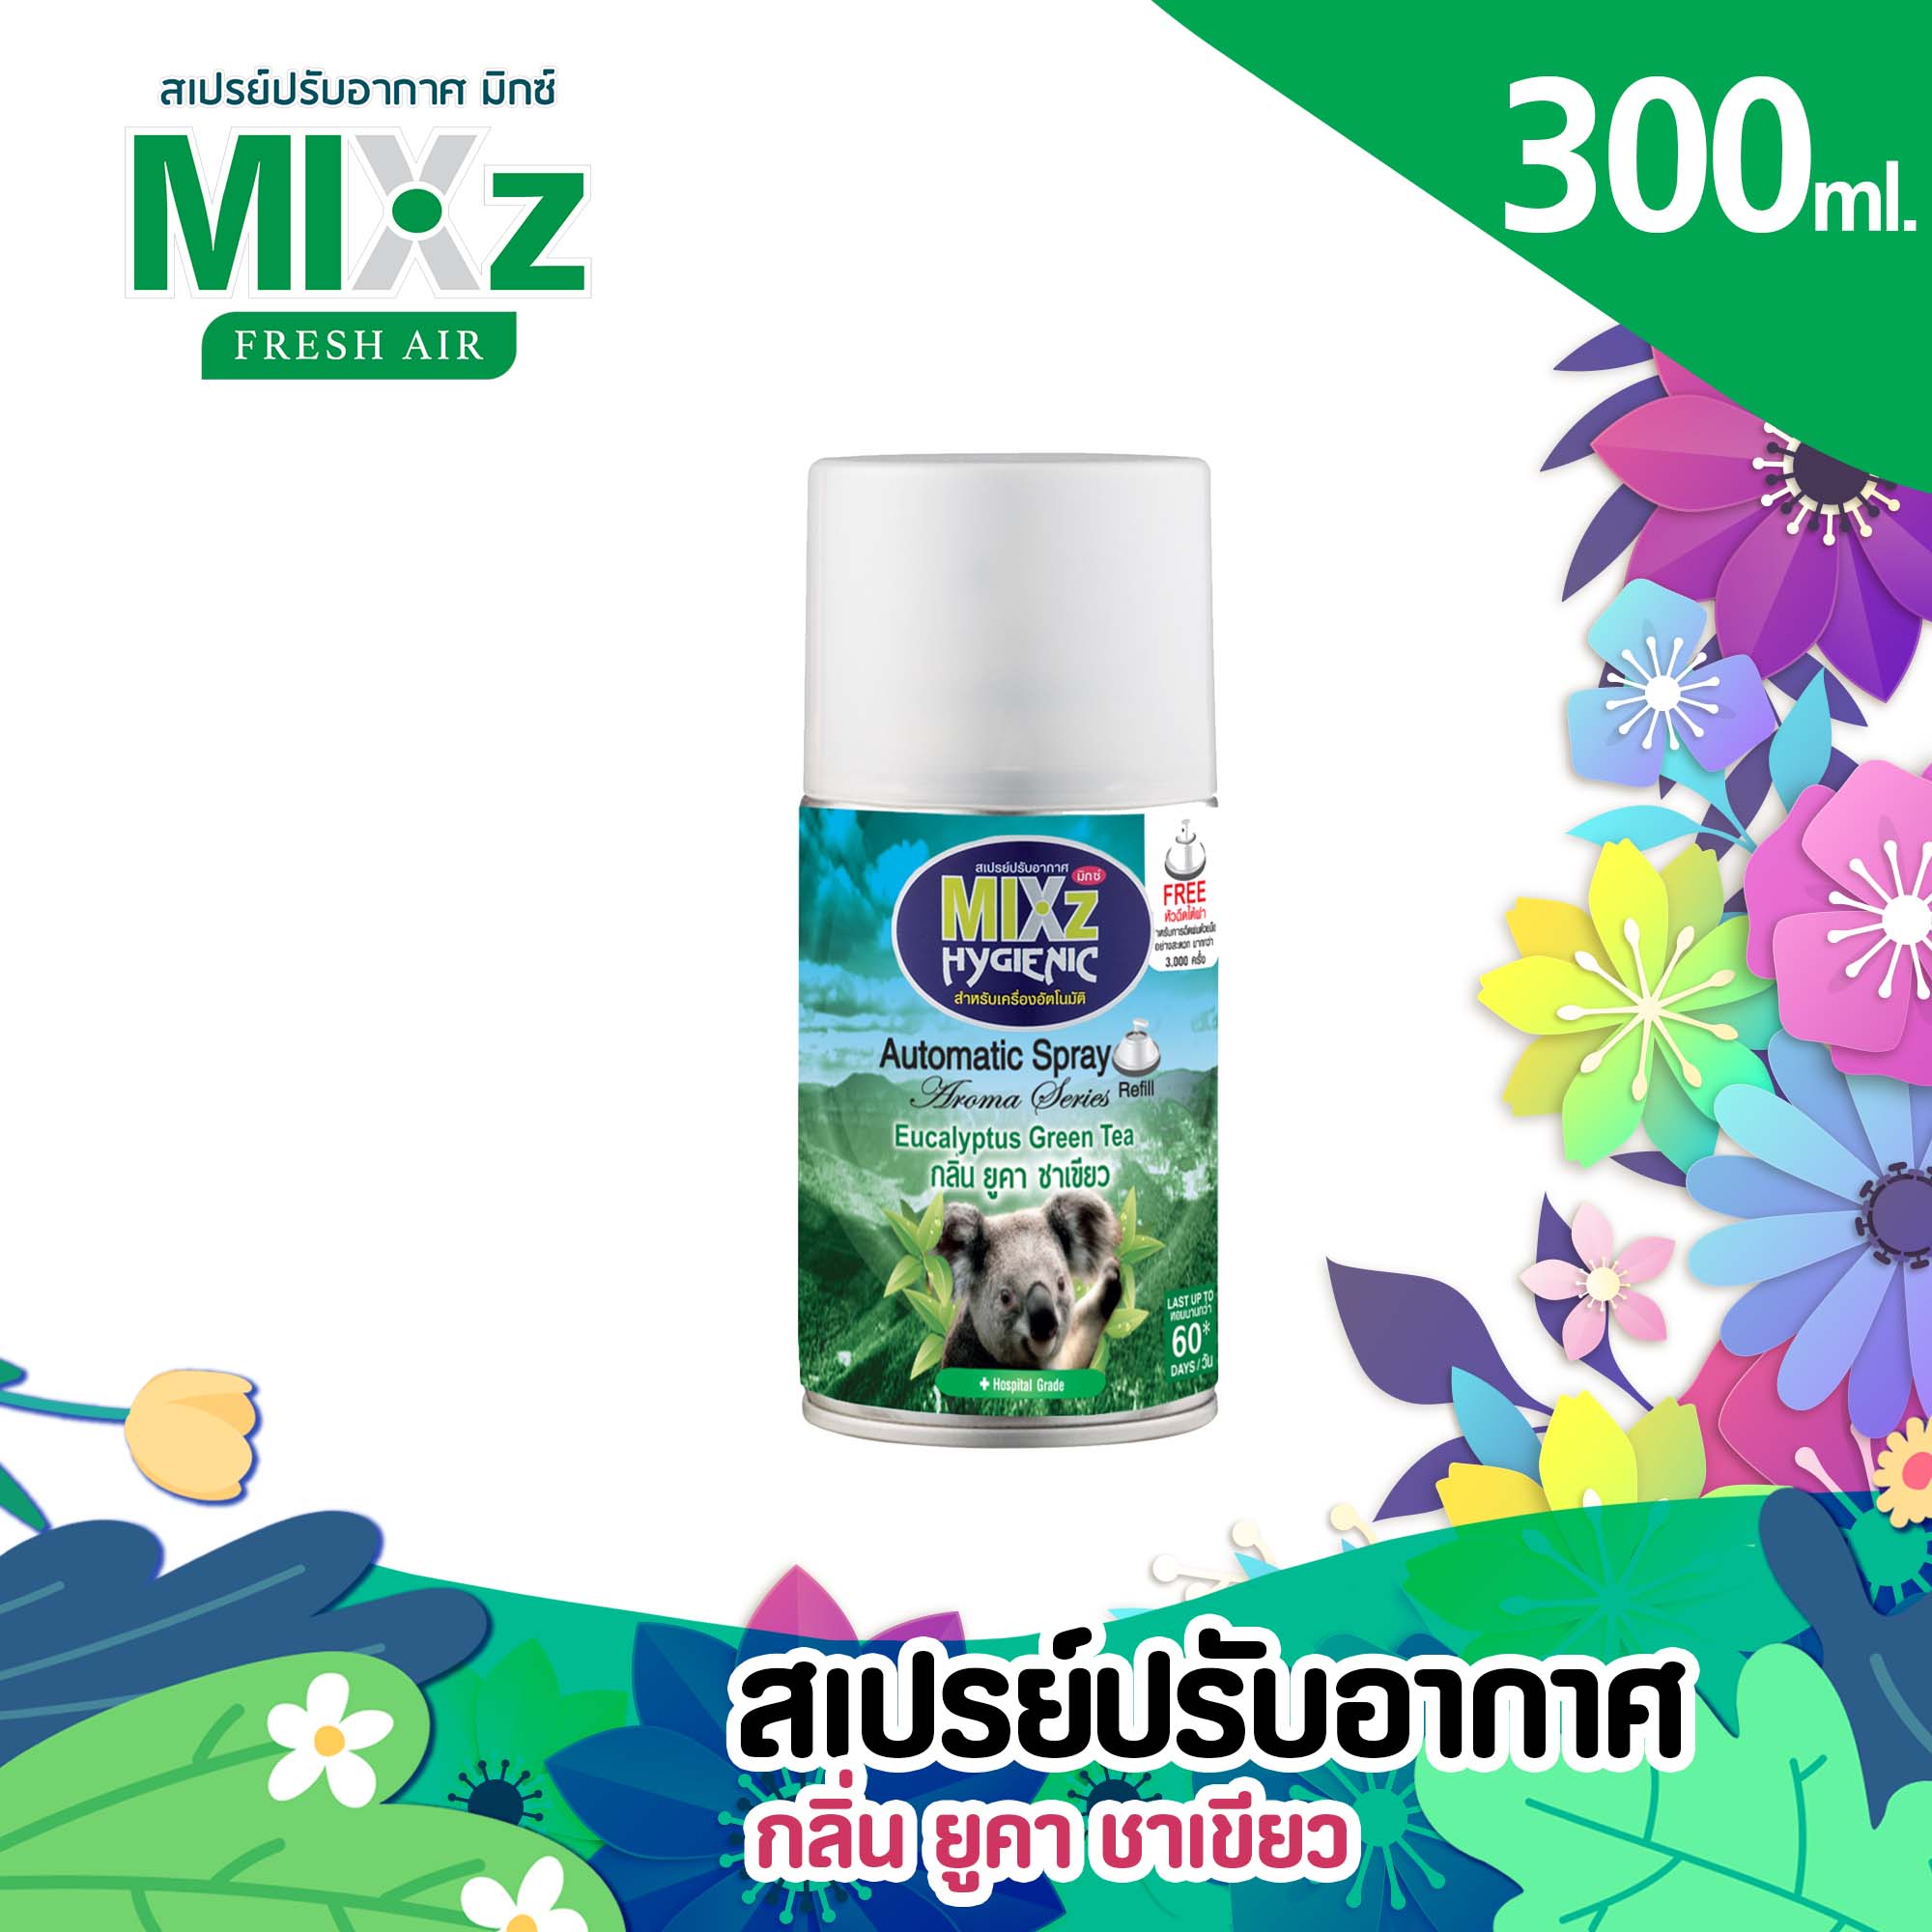 Mixz Hygienic Automatic รีฟิล สเปรย์ปรับอากาศ กลิ่นยูคา-ชาเขียว 300 ml.